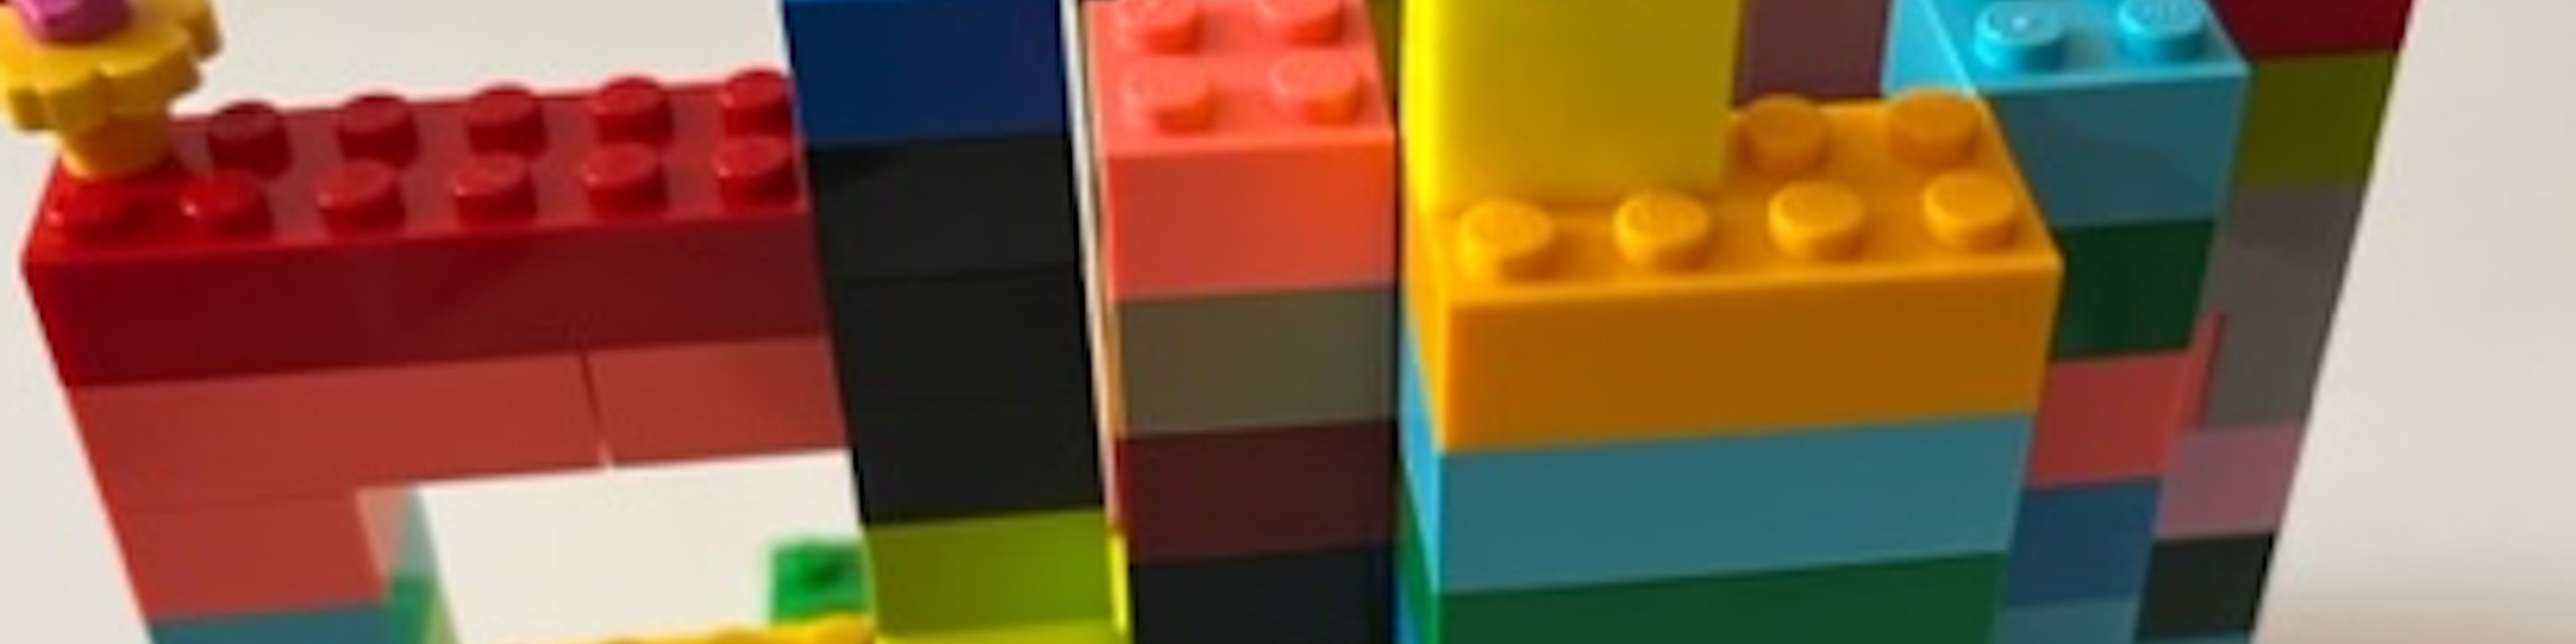 Legosteine aufeinandergestapelt mit einem Gesicht oben drauf | © Caritas Don Bosco Berufsfachschule für Kinderpflege